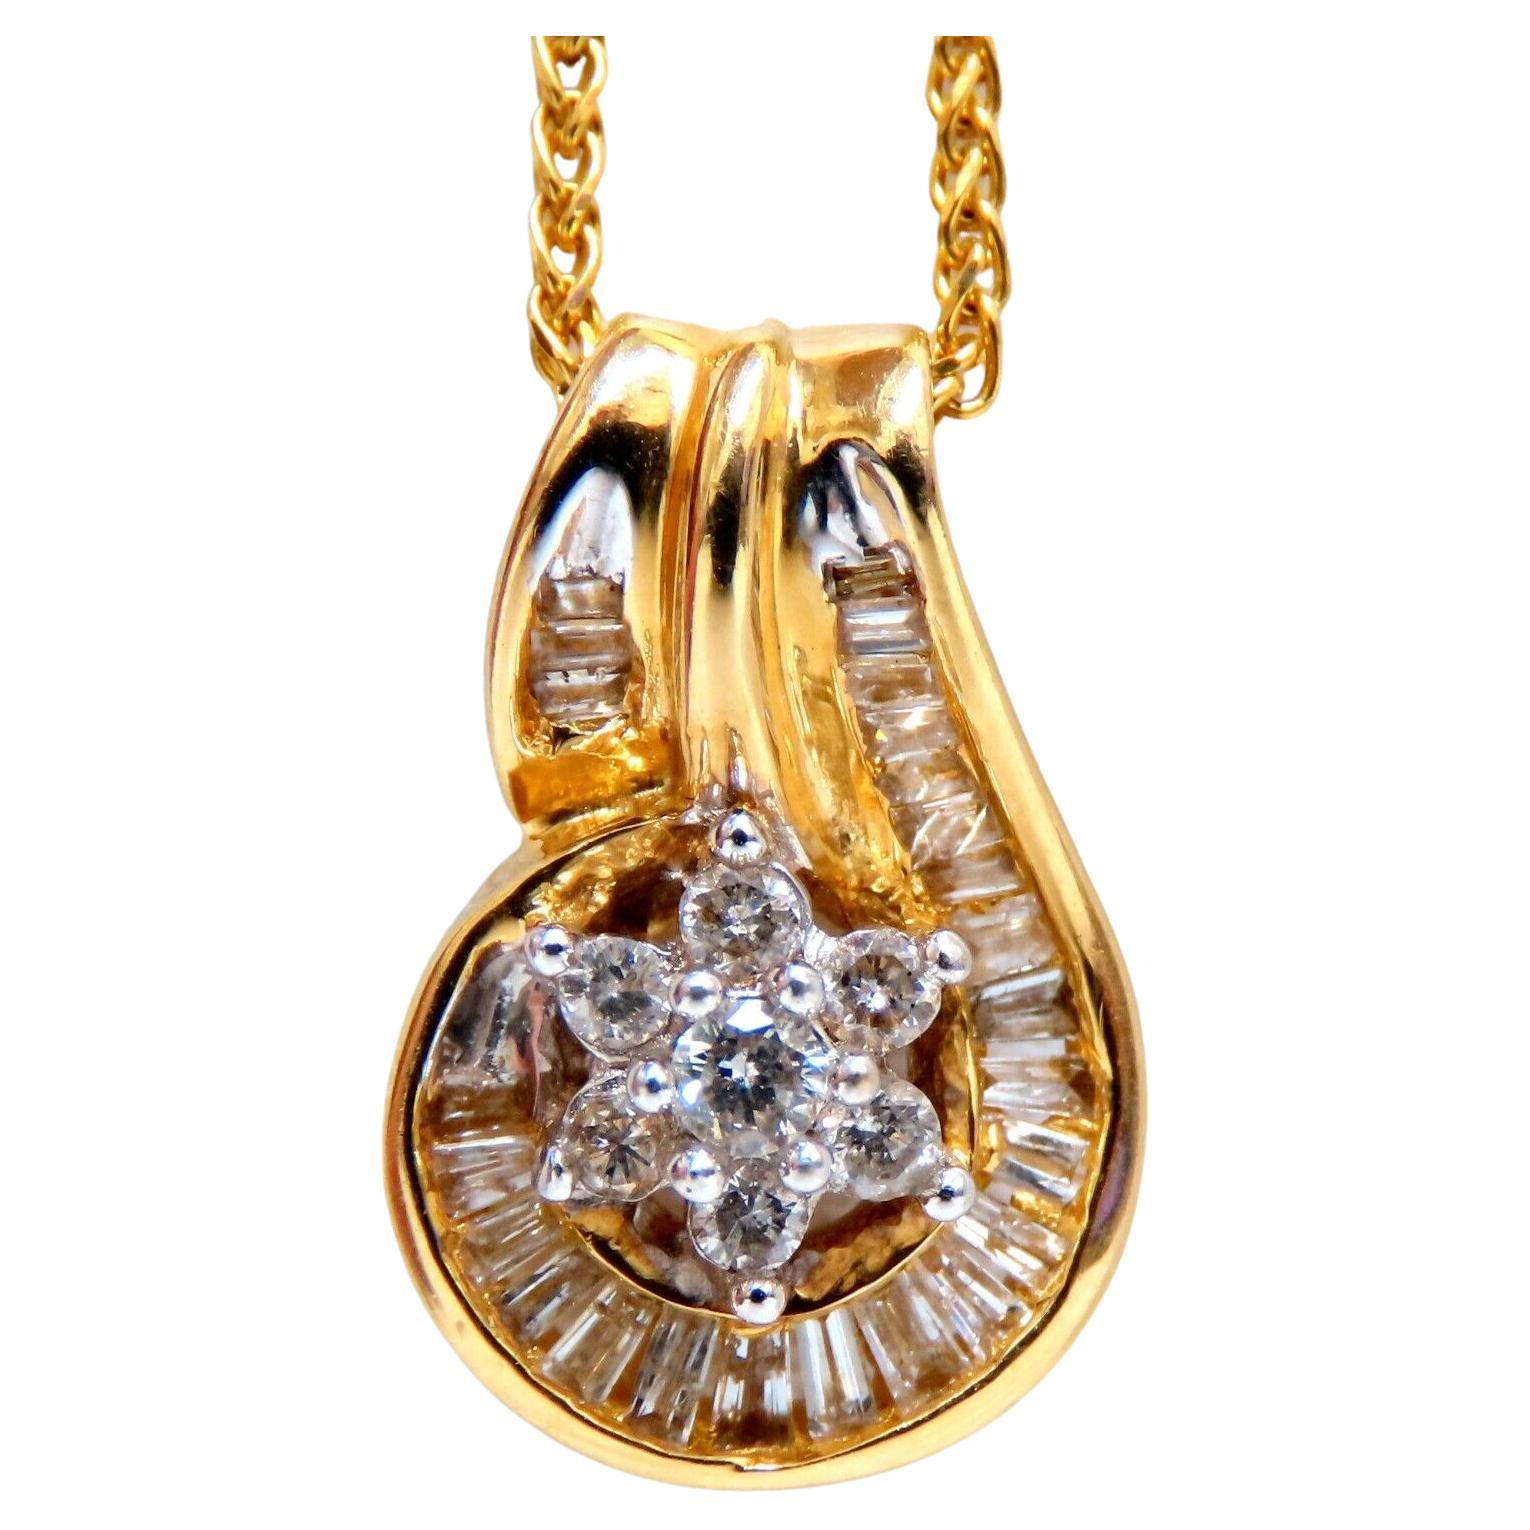 Pendentif et chaîne en or 14 carats avec grappe de diamants naturels baguettes de 0,55 carat